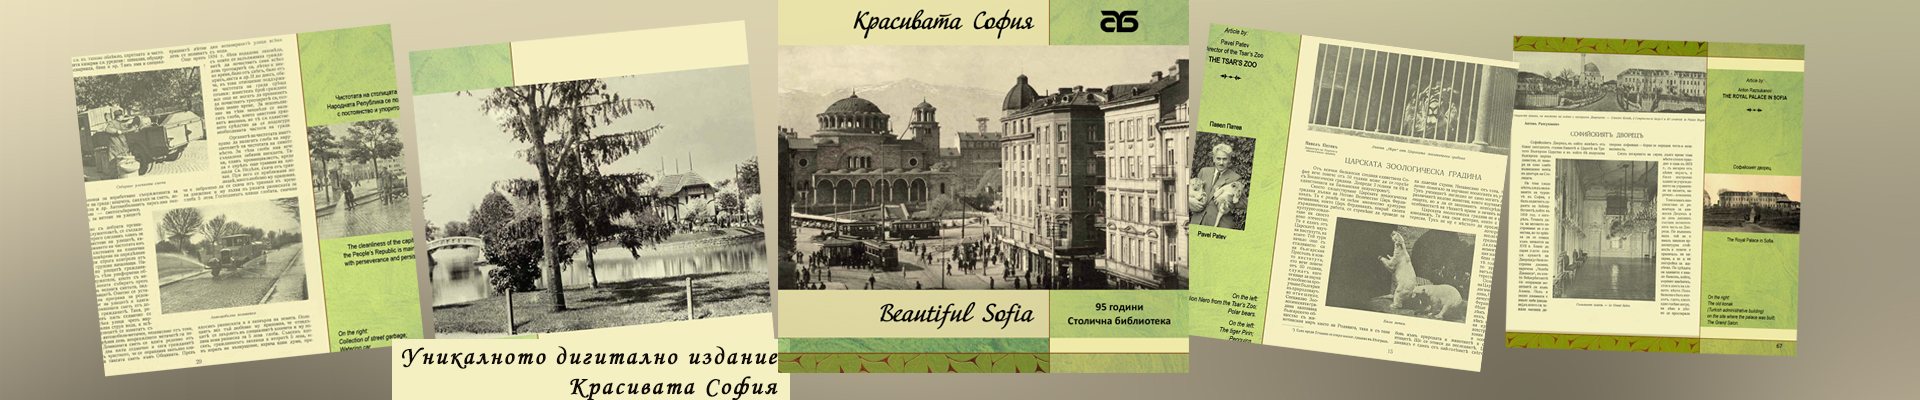 Новото издание „Красивата София“ от тематичната поредица  на Столична библиотека за историята на столицата